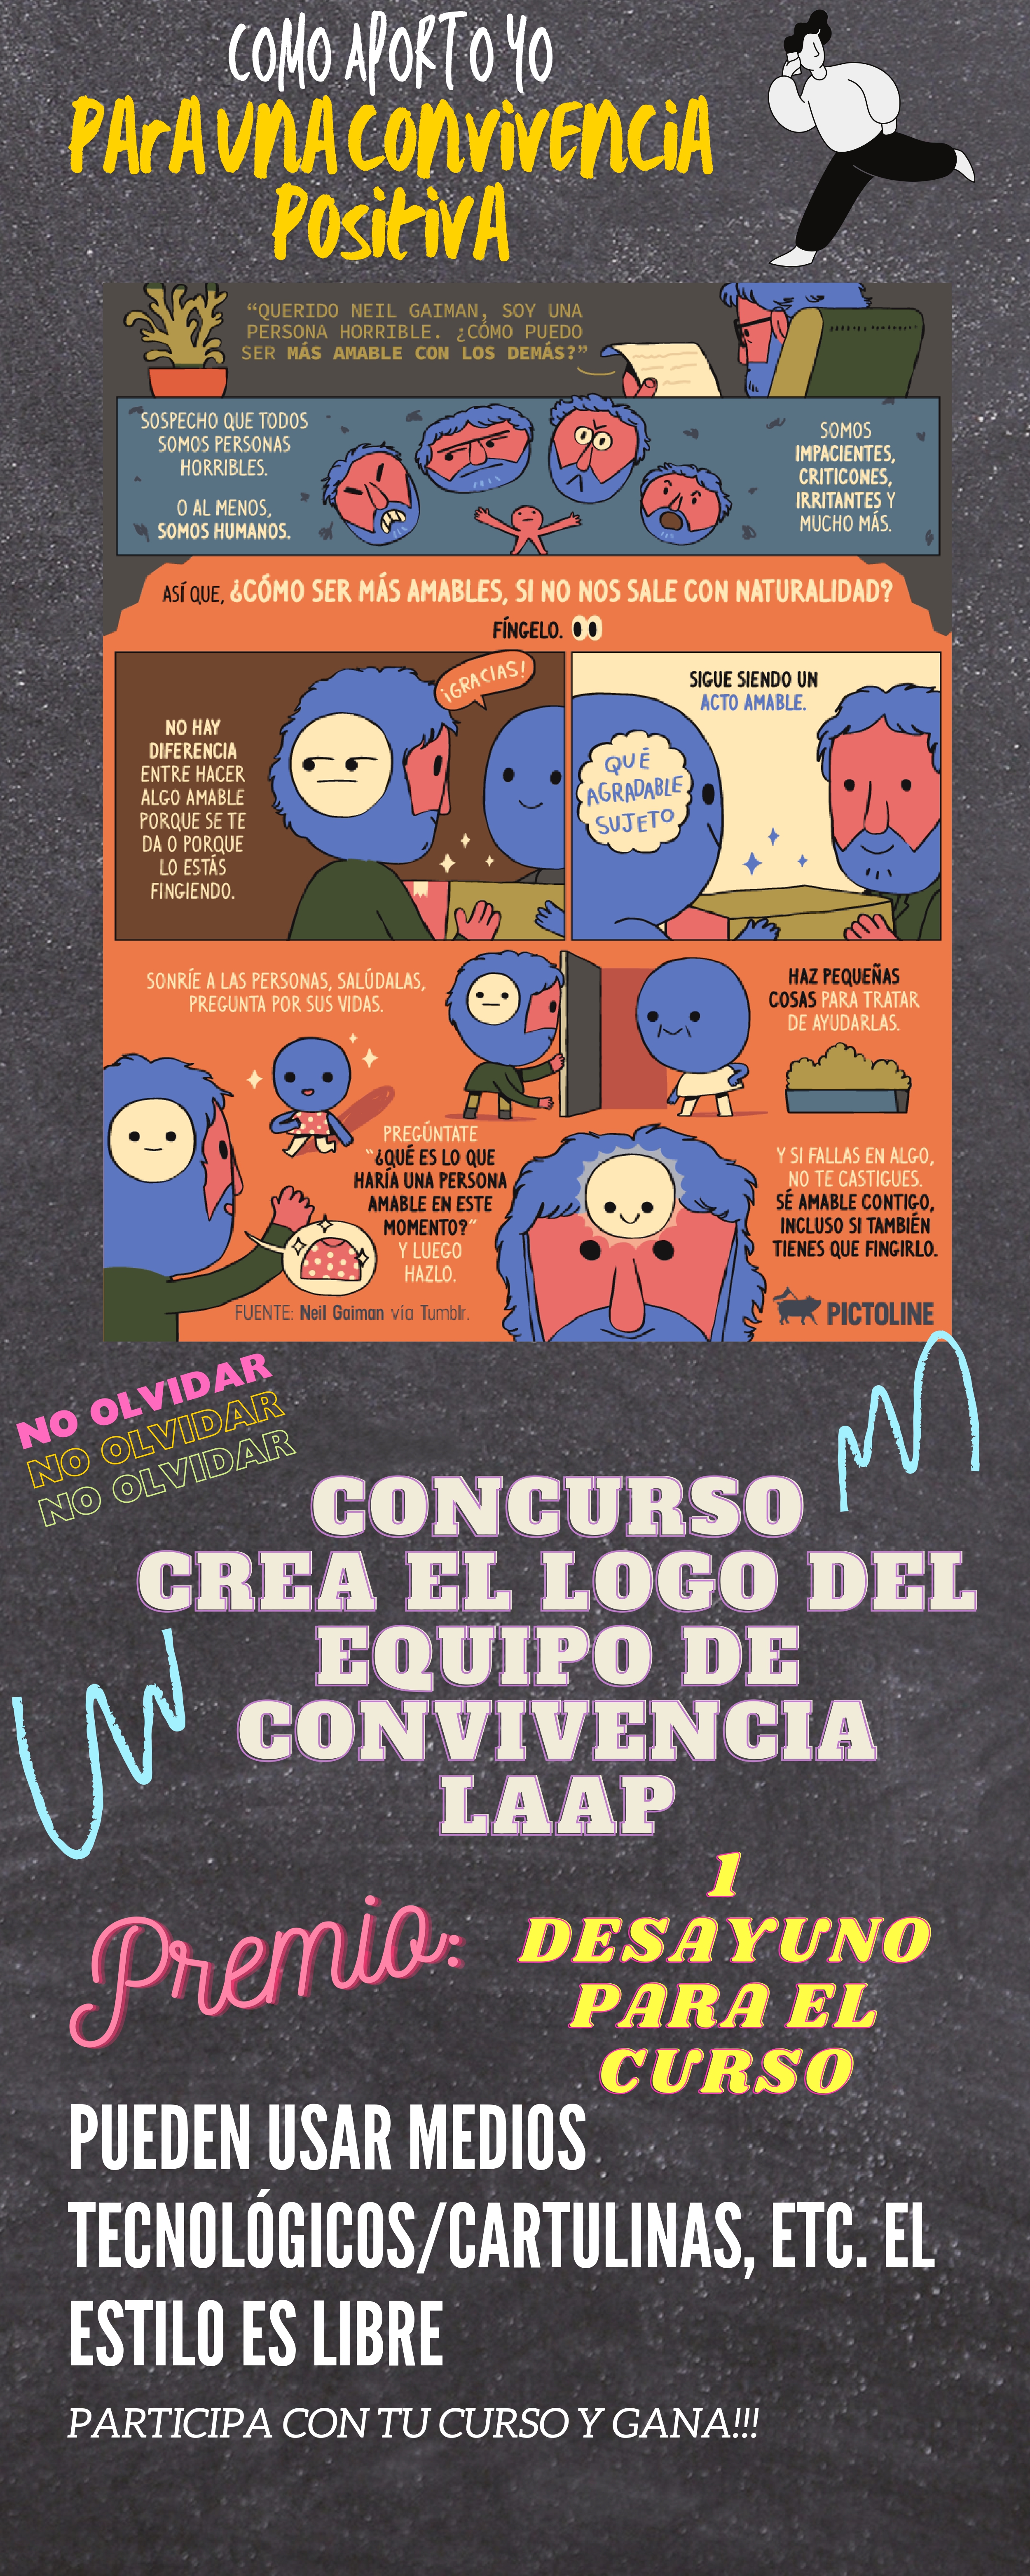 Boletín n°2 DIA DE LA CONVIVENCIA CORREGIDO page 0002